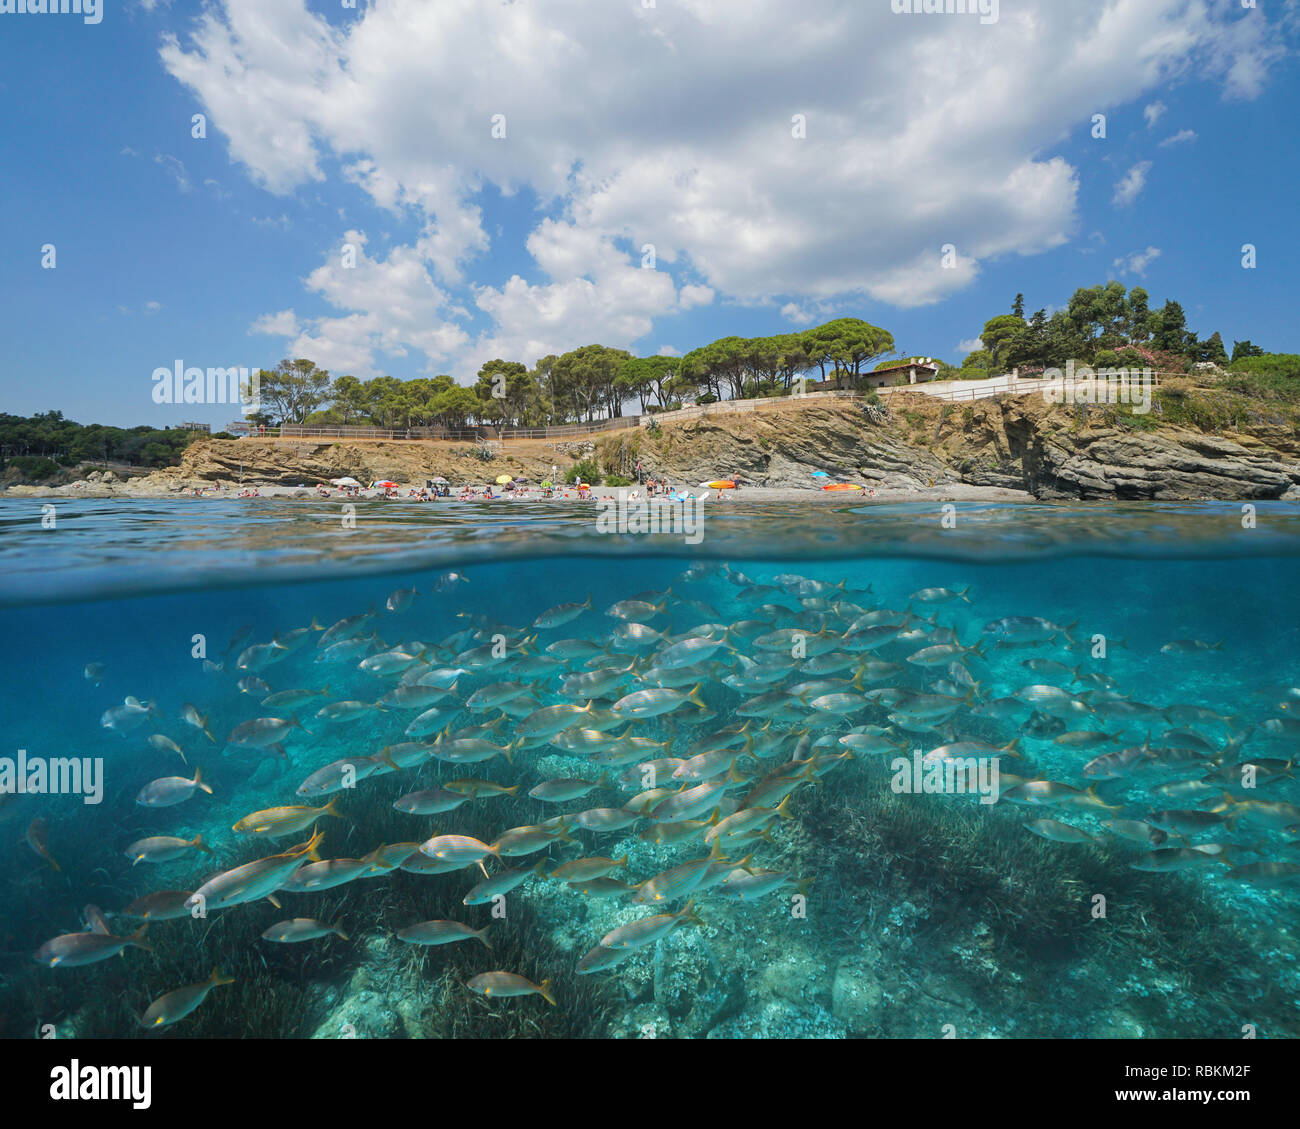 Espagne plages avec un banc de poissons sous l'eau, Llanca sur la Costa Brava, split voir la moitié de la sur et sous l'eau, mer Méditerranée, Catalogne Banque D'Images